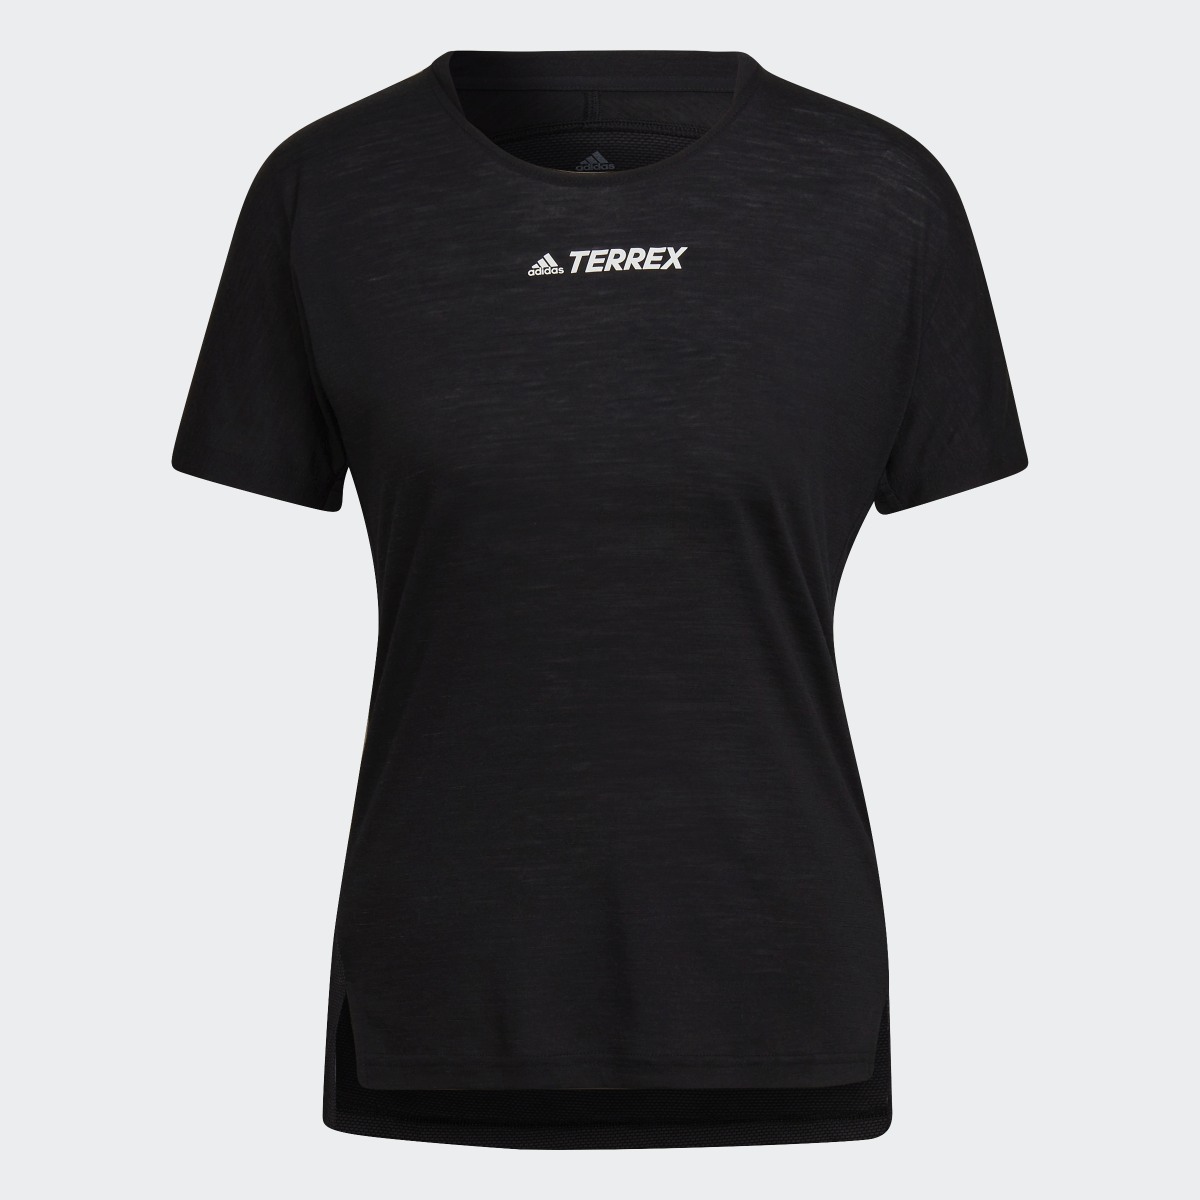 Adidas T-shirt Terrex Agravic Pro Wool. 5